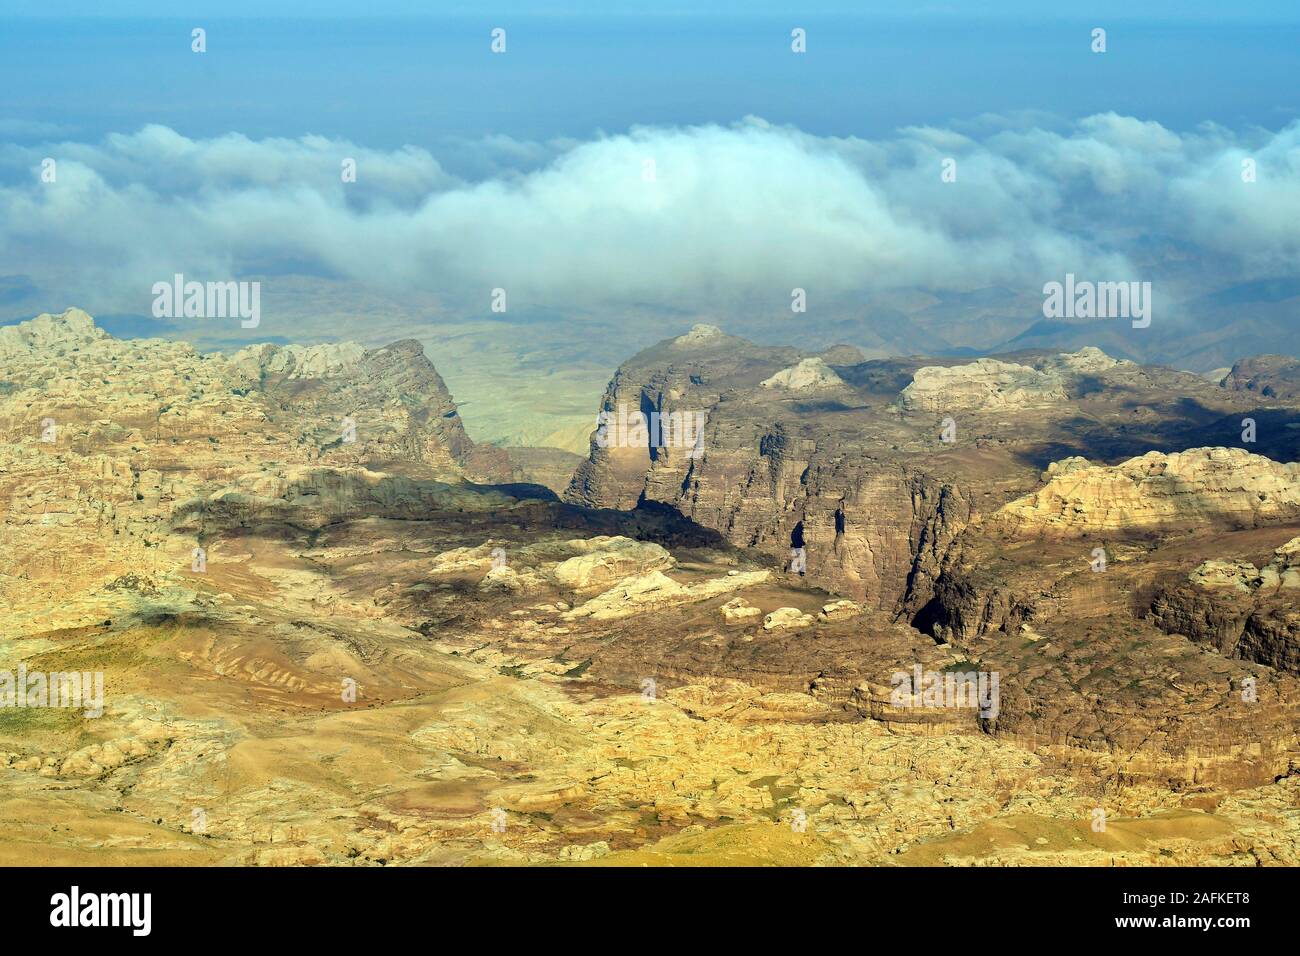 La Jordanie, paysage aride dans Masuda réserve proposée avec Jordan Valley en arrière-plan Banque D'Images